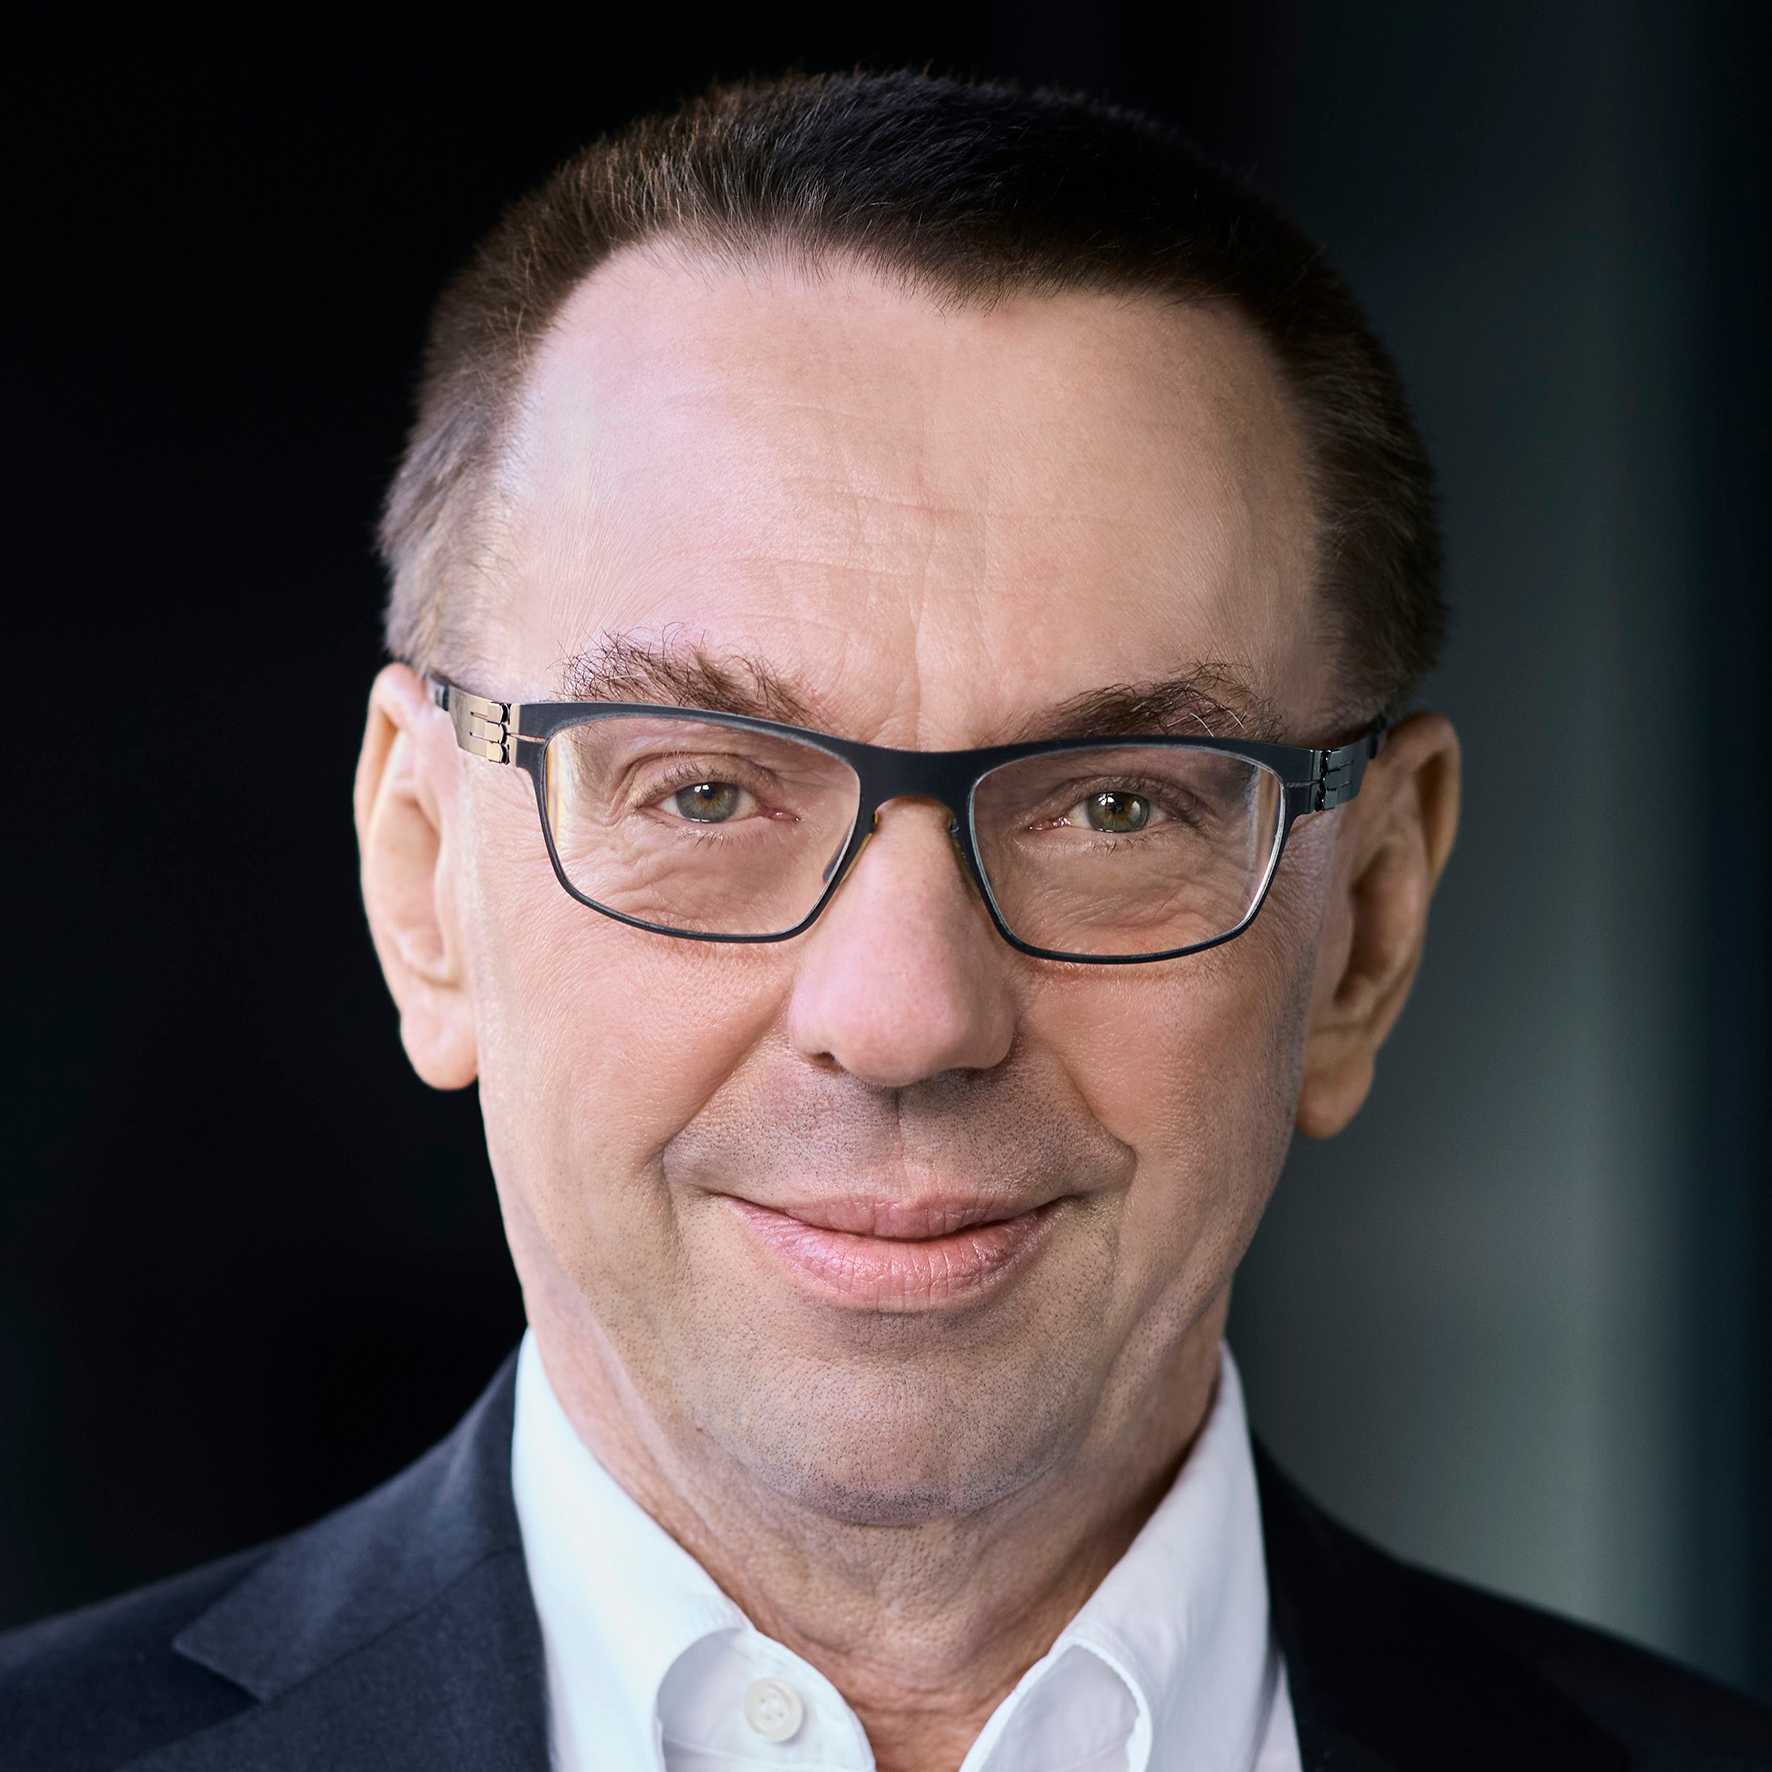 Ein zweites Porträt-Foto zeigt Ulrich Weidmann, den ETH-Vizepräsidenten für Infrastruktur, ebenfalls mit einem Zitat